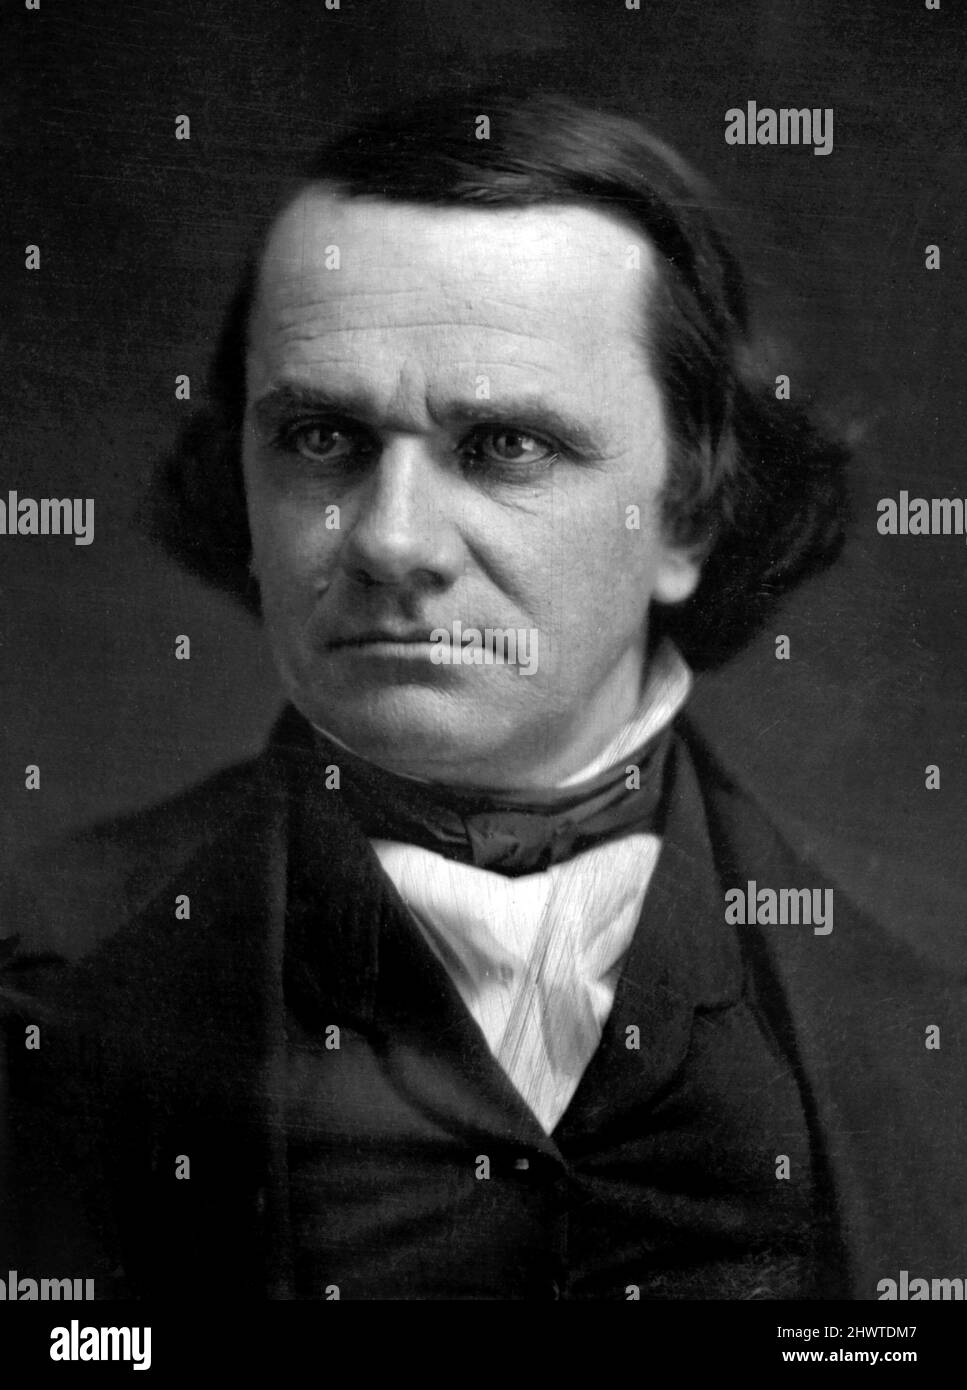 Retrato del político estadounidense y candidato presidencial demcrático, Stephen A Douglas (1813-1861) por Matthew Brady, c. 1850-52 Foto de stock